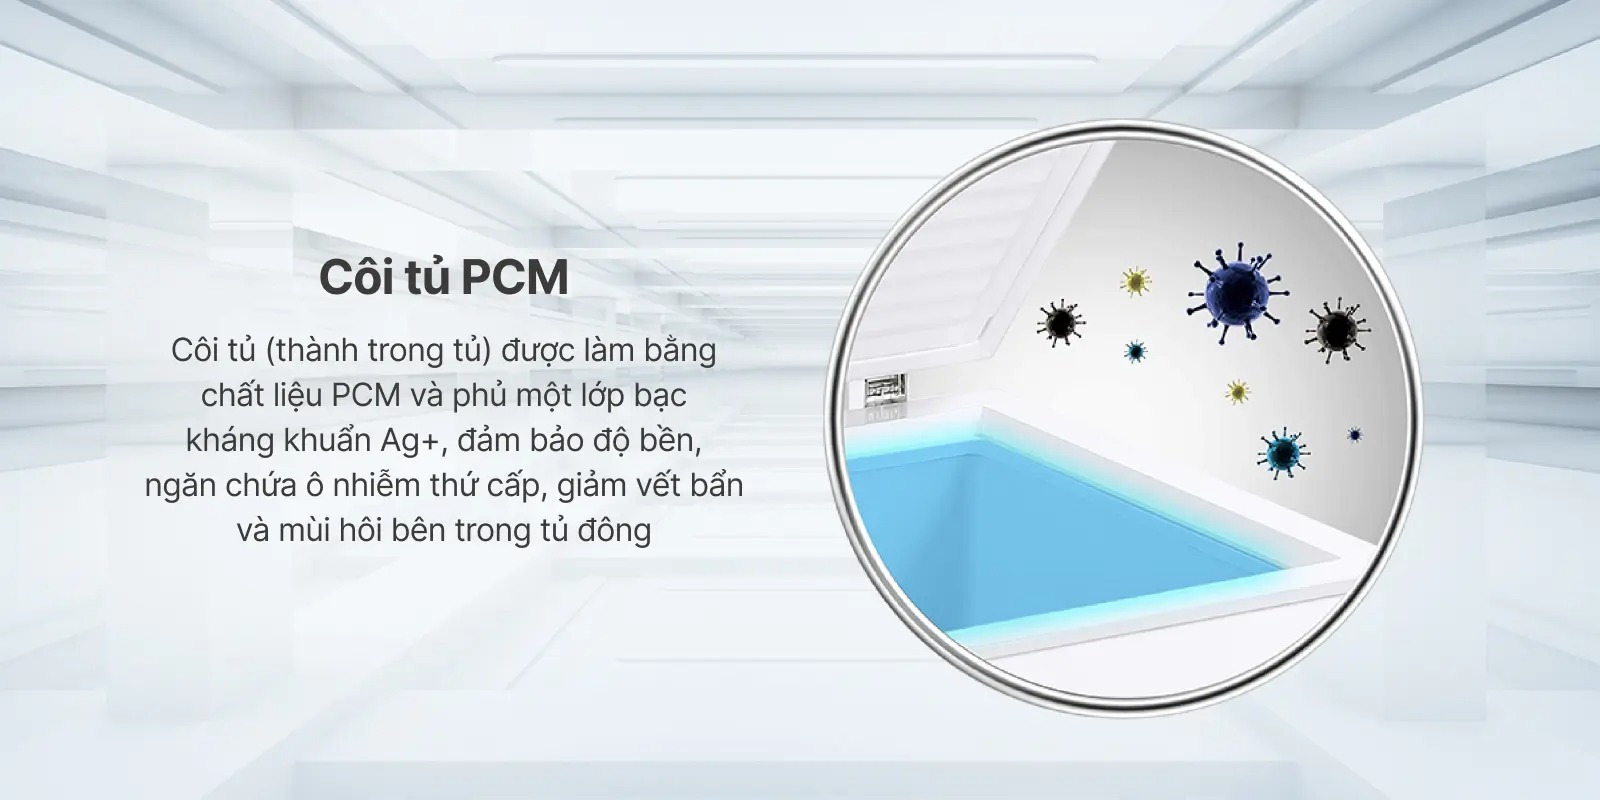 Thiết kế côi tủ bằng nhựa PCM